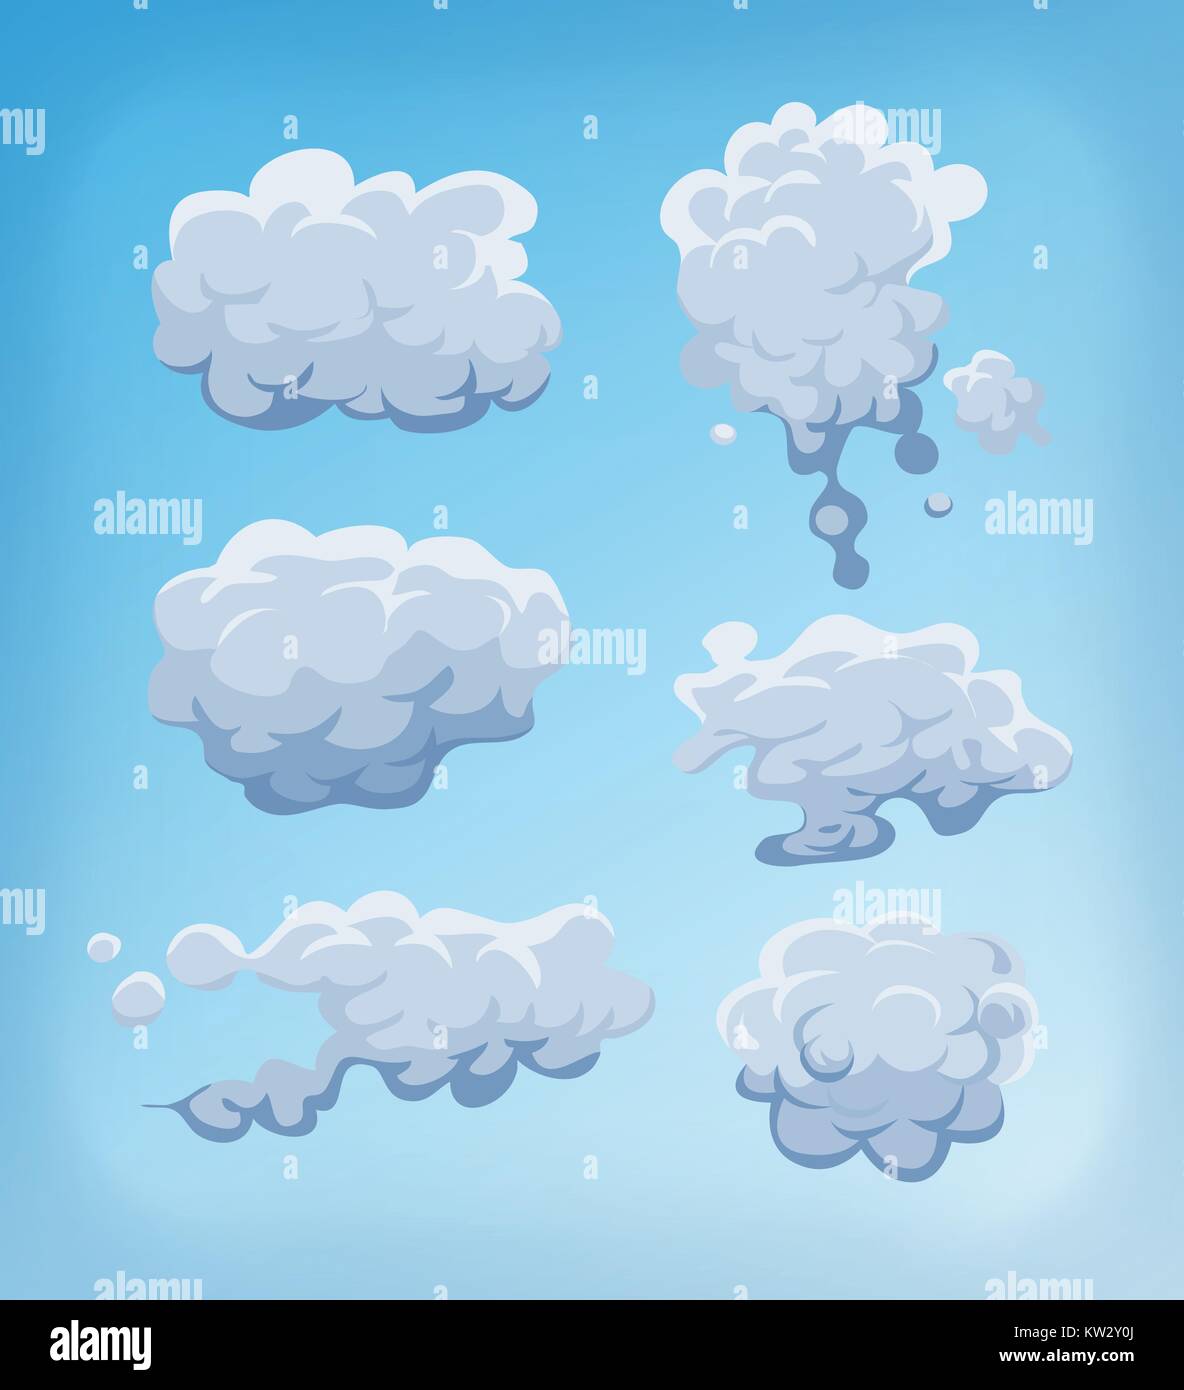 Illustration d'une série de bande dessinée les nuages, la fumée et le brouillard des icônes sur fond de ciel bleu Illustration de Vecteur